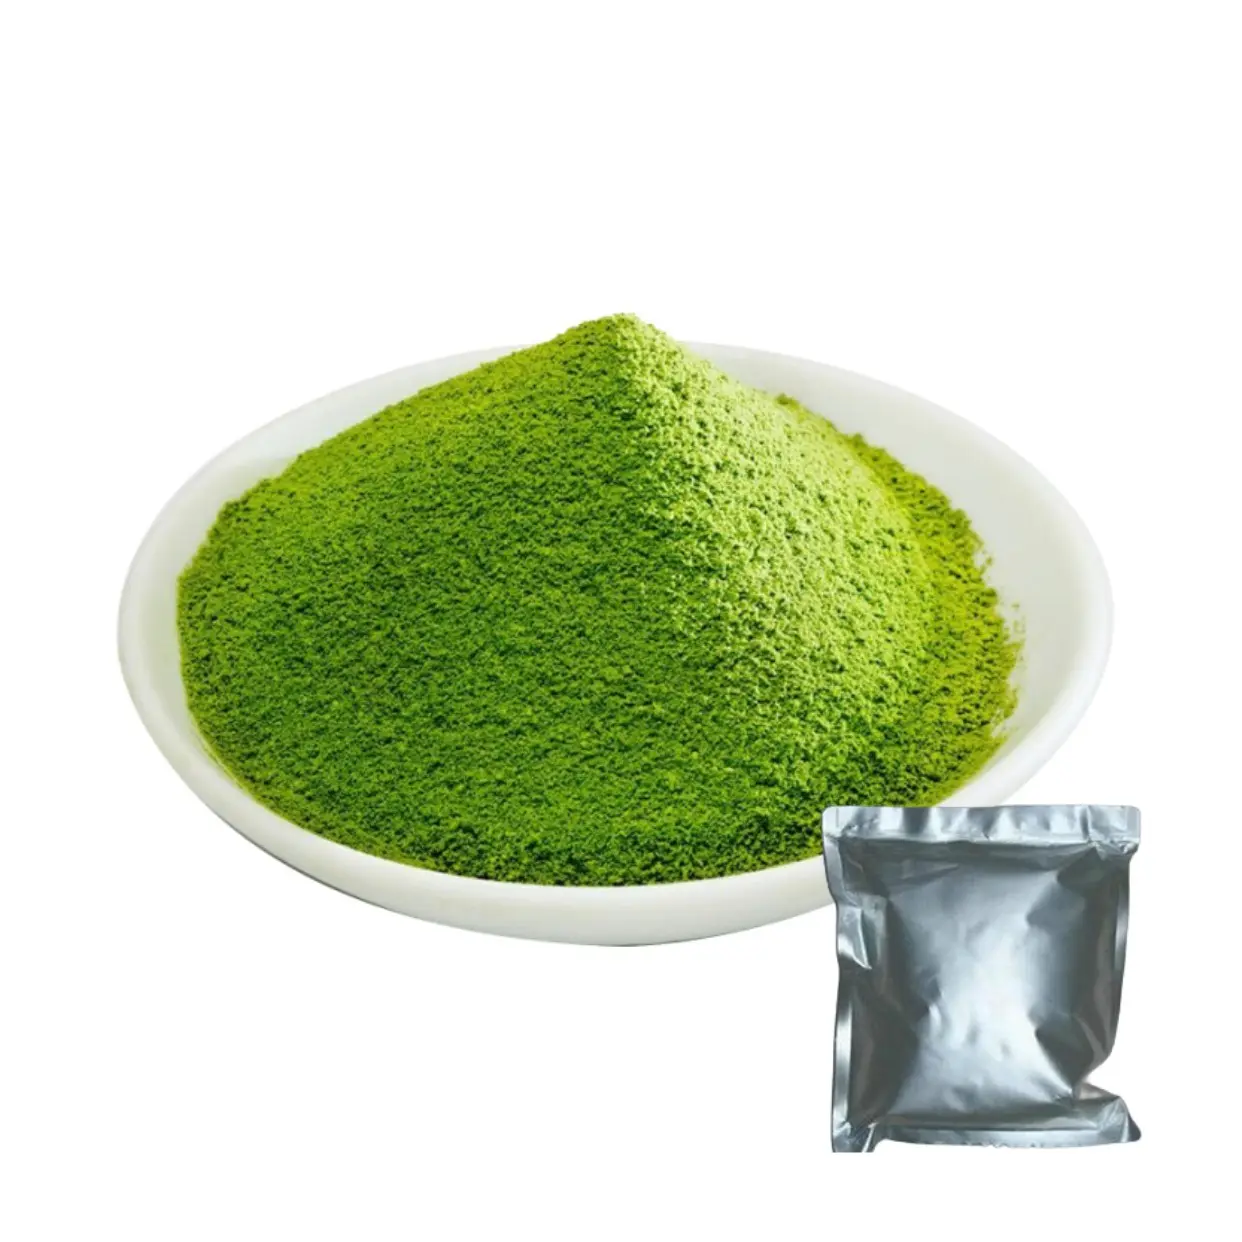 USDA אורגני טקסי מאצ'ה תה ירוק אבקת מאצ'ה תה ירוק